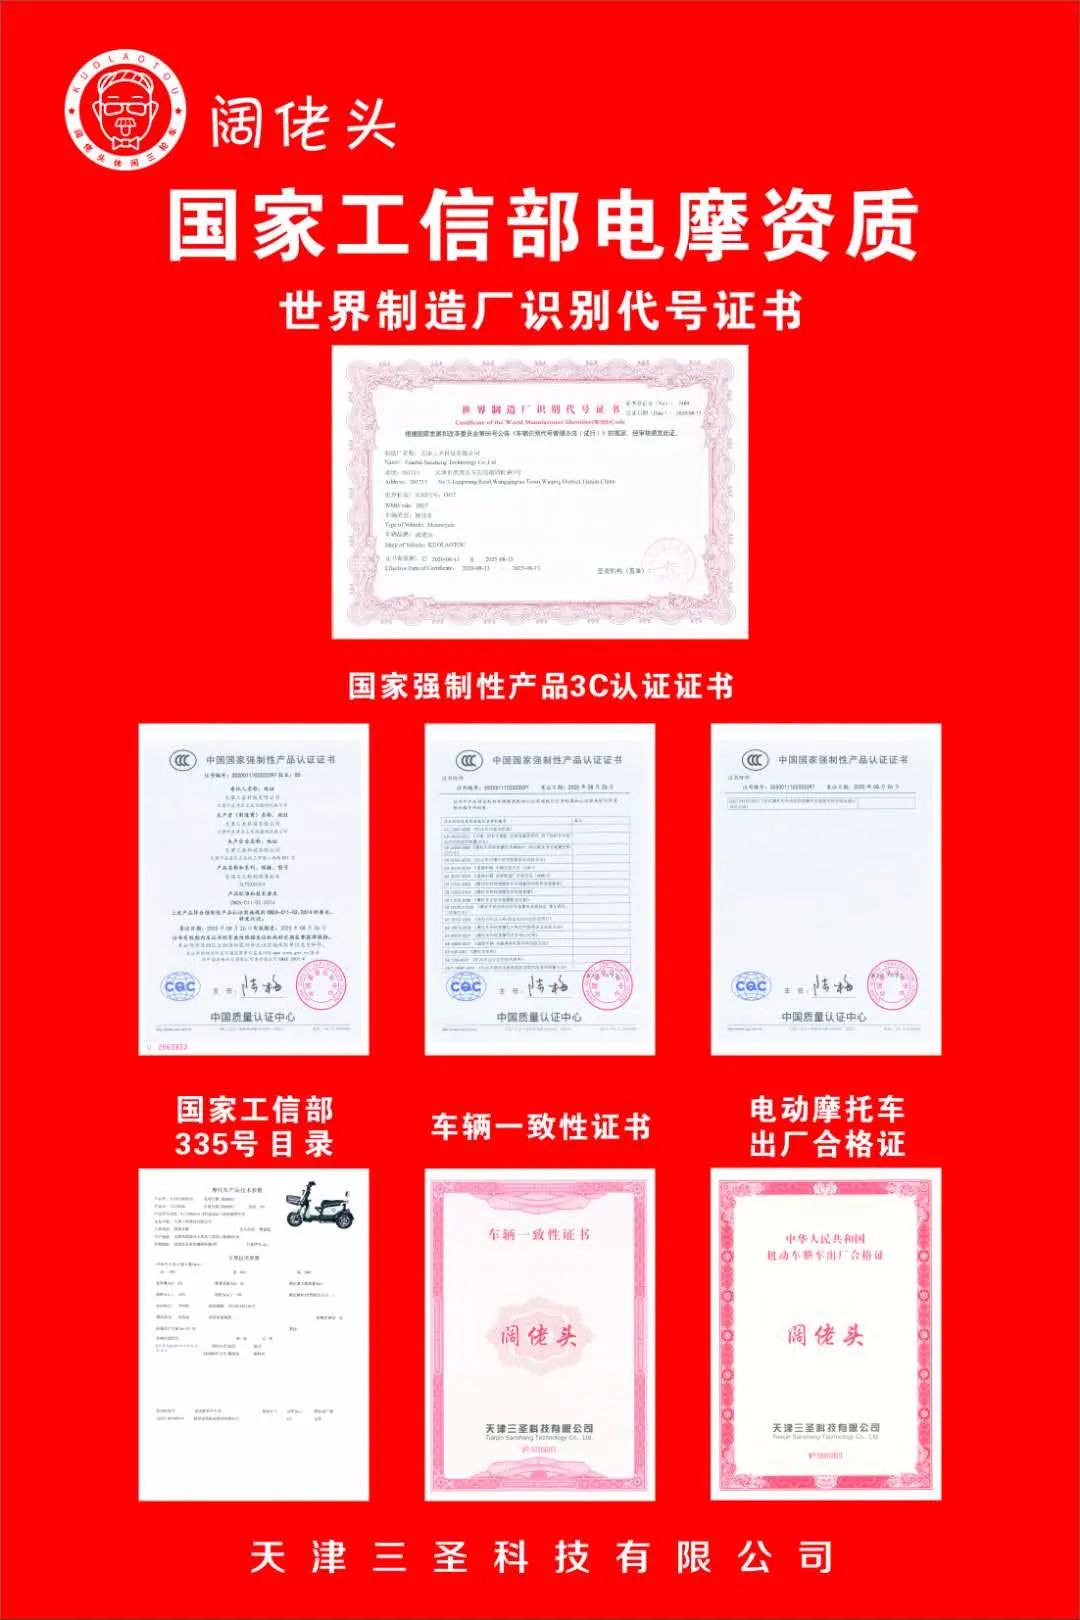 南京浦口经济开发区企业名录_南京中小企业名录_南京公司名录